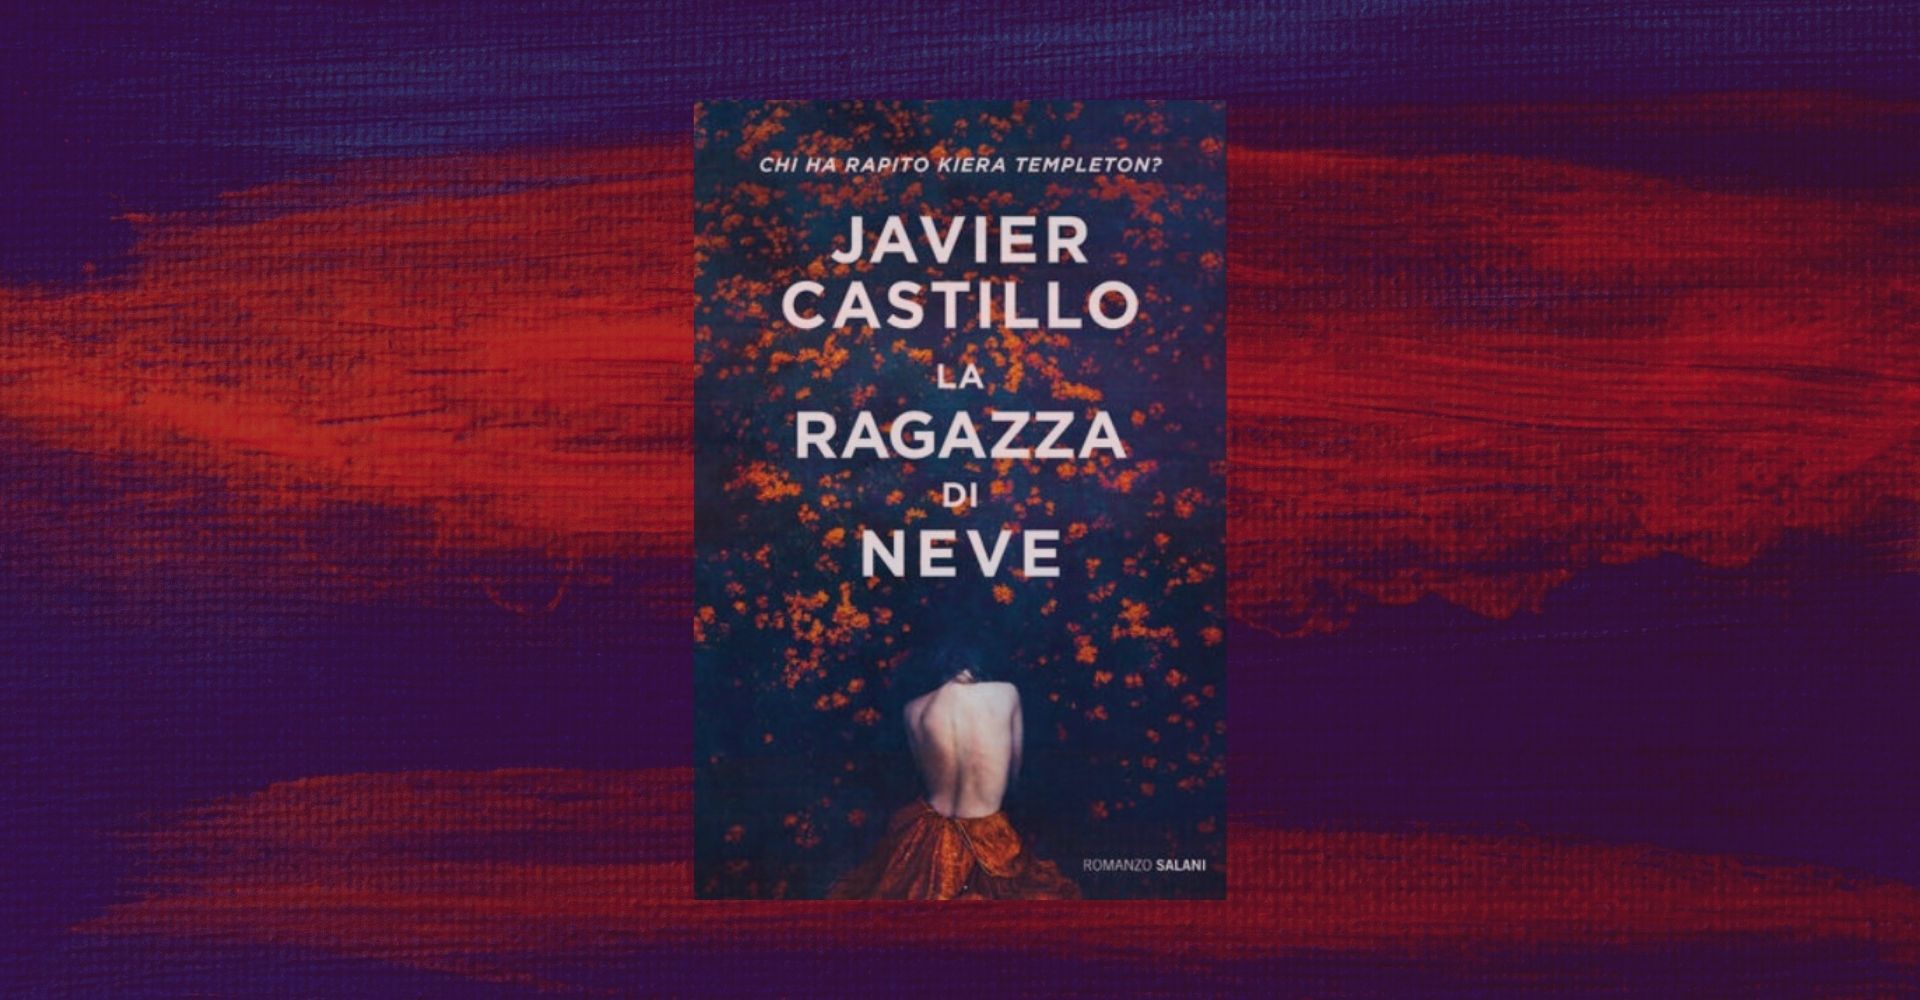 "La ragazza di neve", il thriller Javier Castillo (presto anche su Netflix)